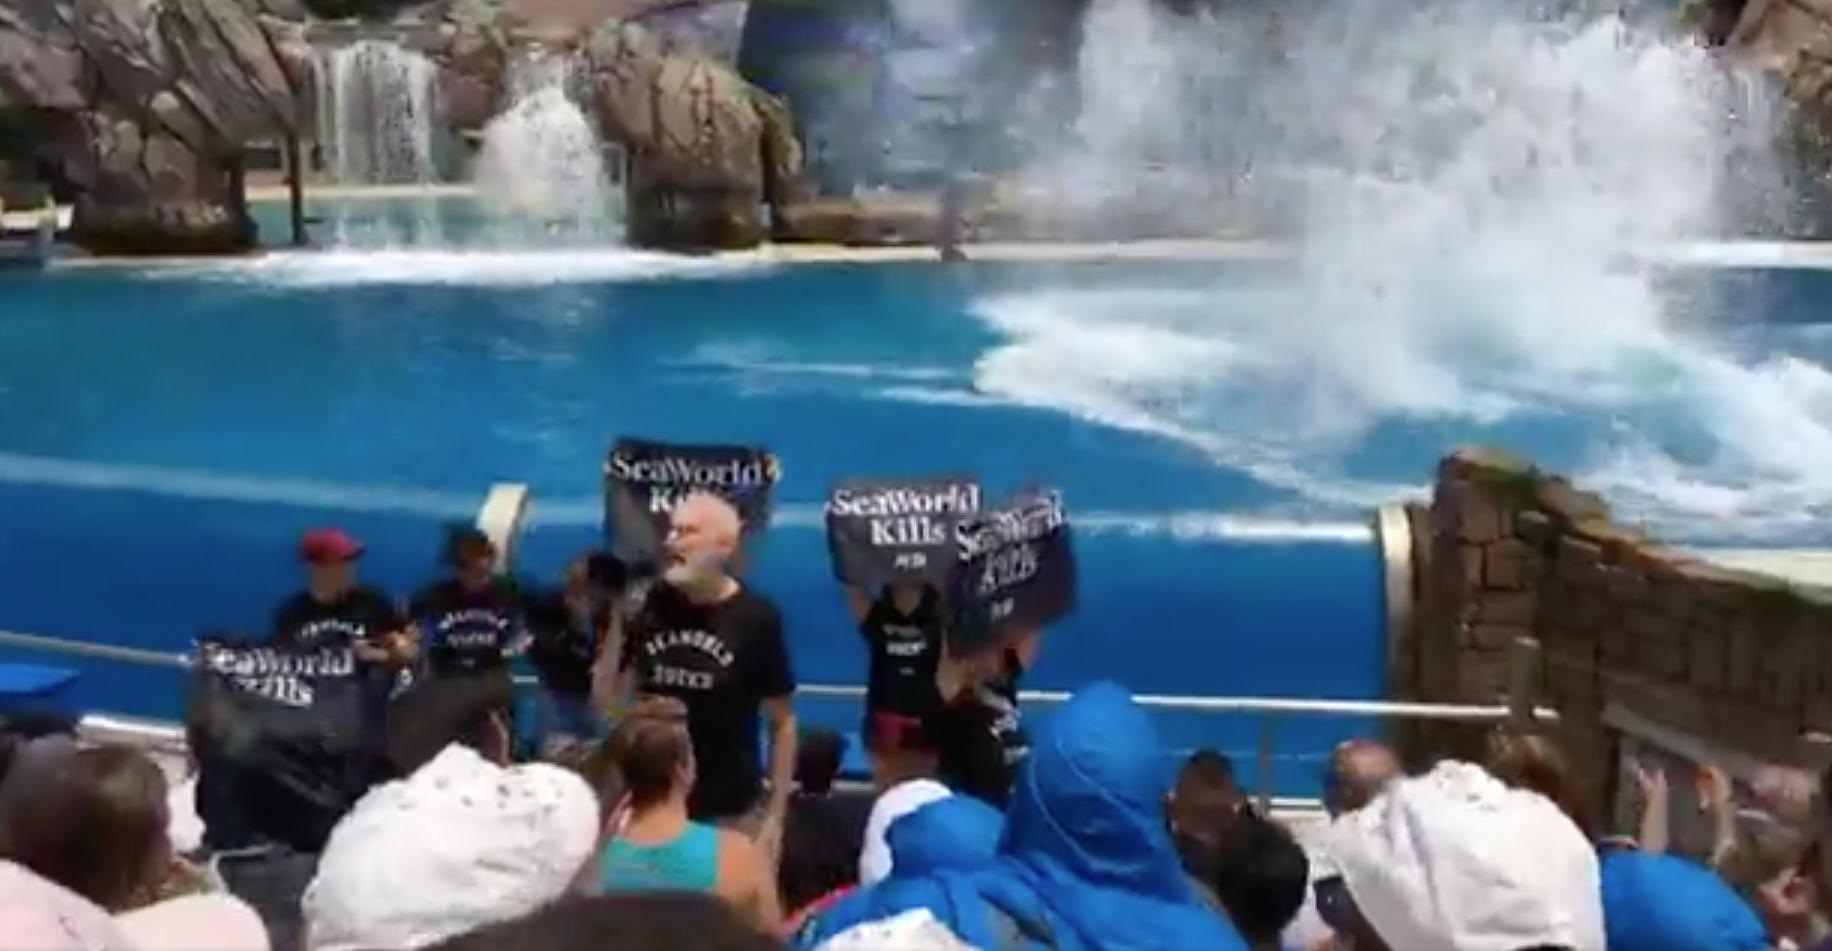 James Cromwell protesterar tillsammans med flera personer under en föreställning på Seaworld.